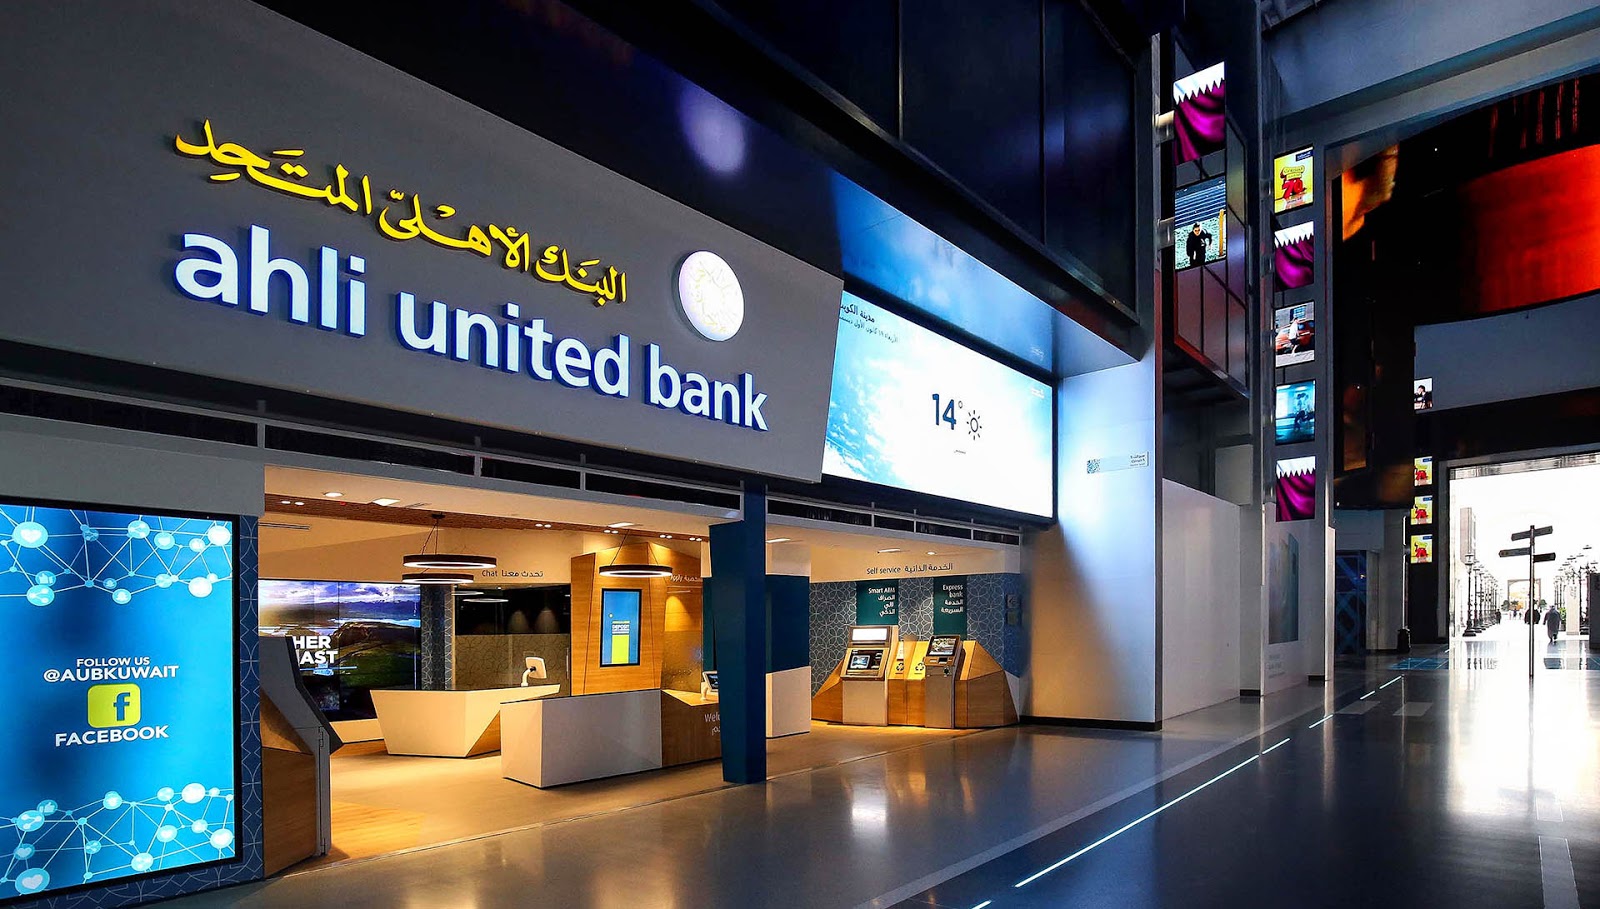 البنك الأهلي المتحد - مصر يرفع سعر الفائدة على الشهادات الإدخارية ذات العائد المتغير